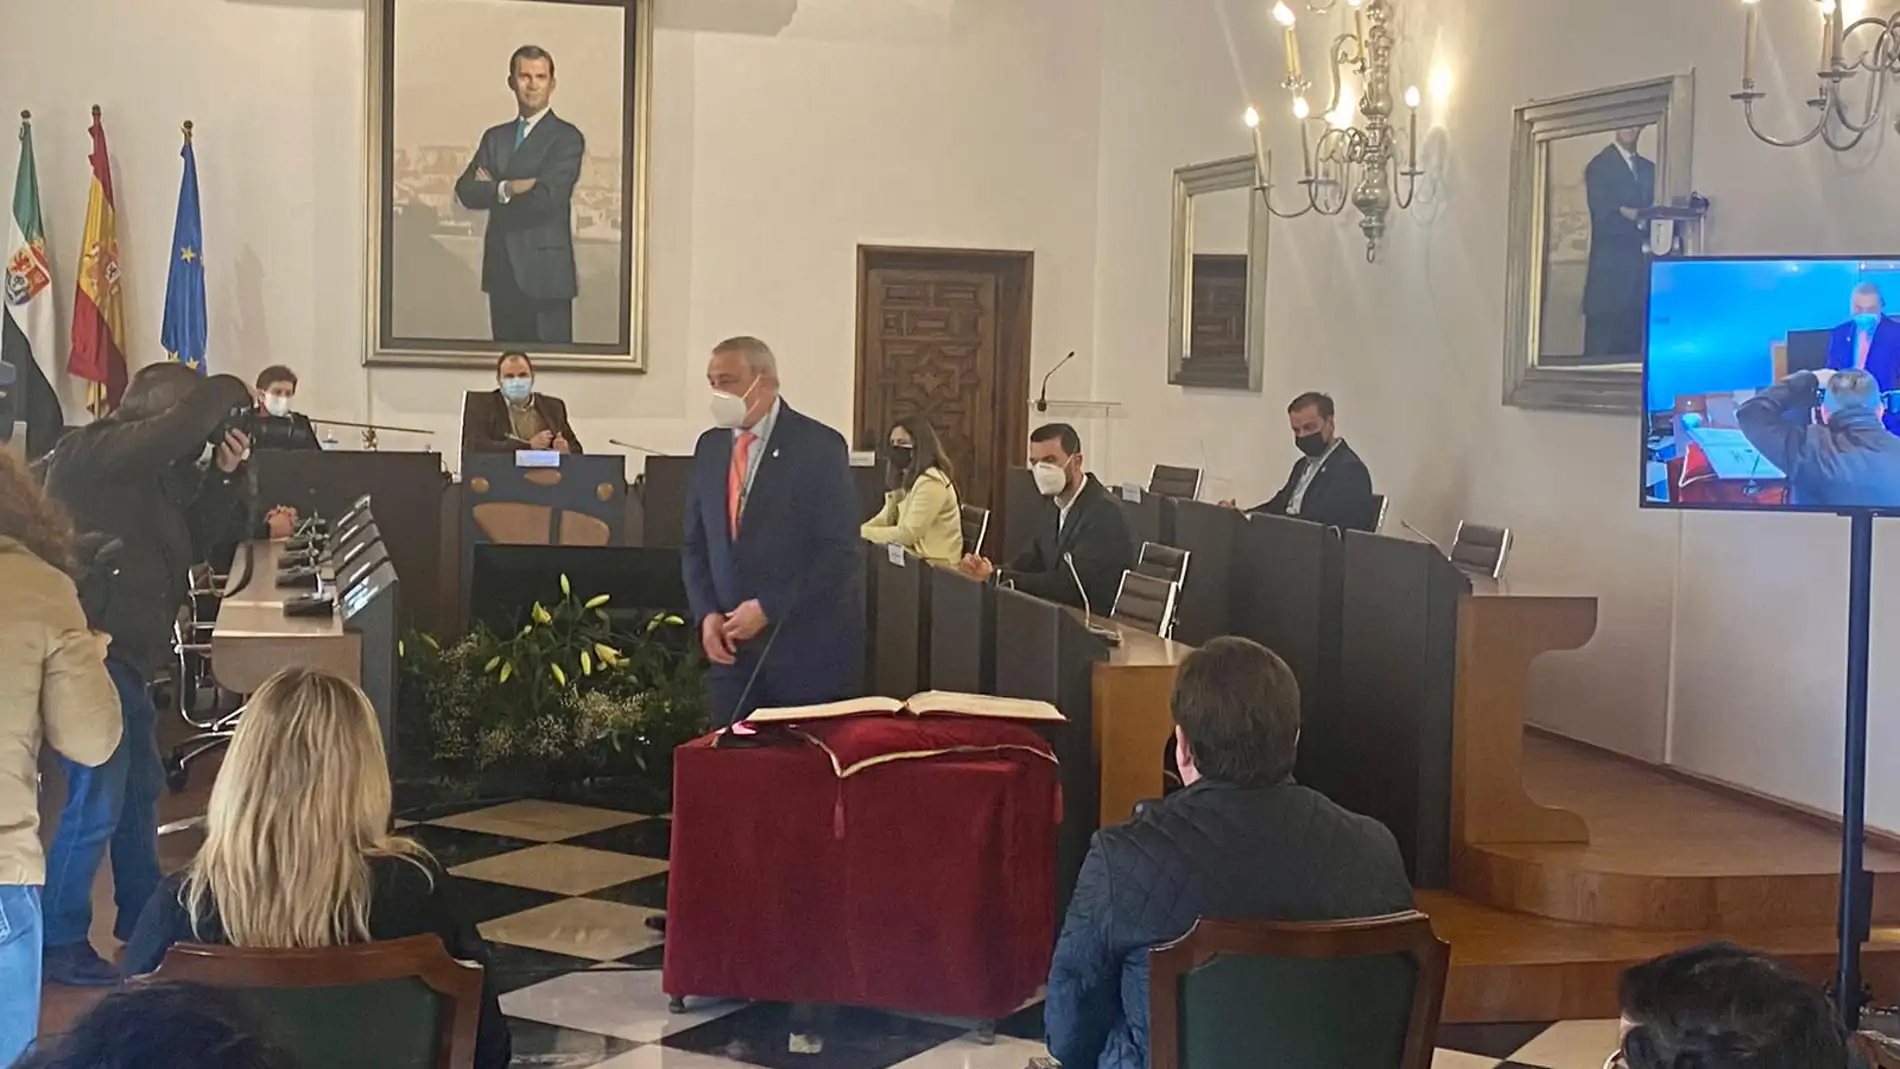 El alcalde de la localidad cacereña de Calzadilla, Carlos Carlos Rodríguez, ha sido elegido este martes nuevo presidente de la Diputación de Cáceres